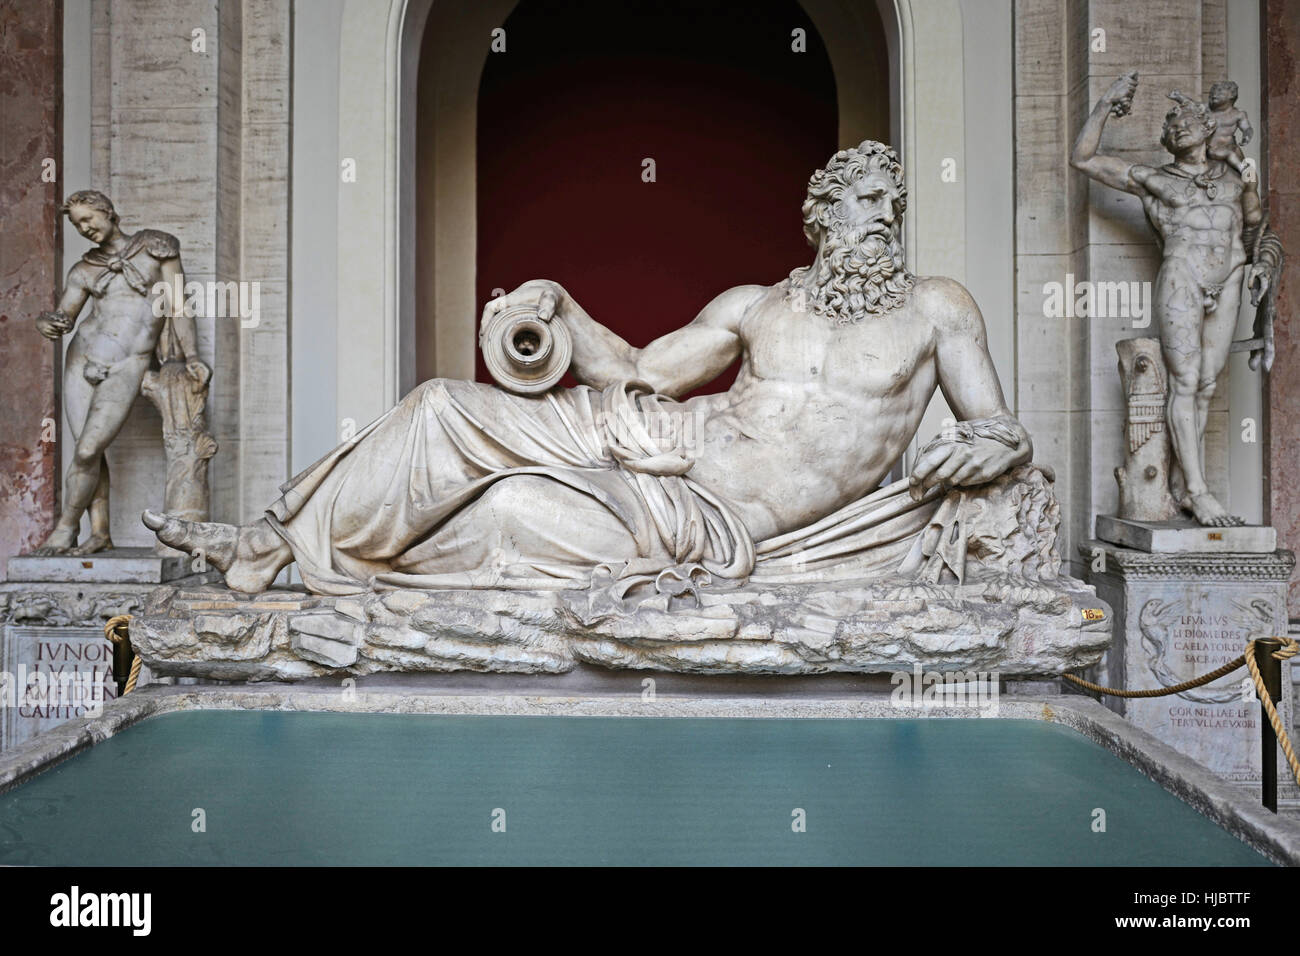 Kunstskulpturen in den Vatikanischen Museen ausgestellt.  Laokoon, der Sohn des Acoetes, ist eine Figur in der griechischen und römischen Mythologie. Stockfoto